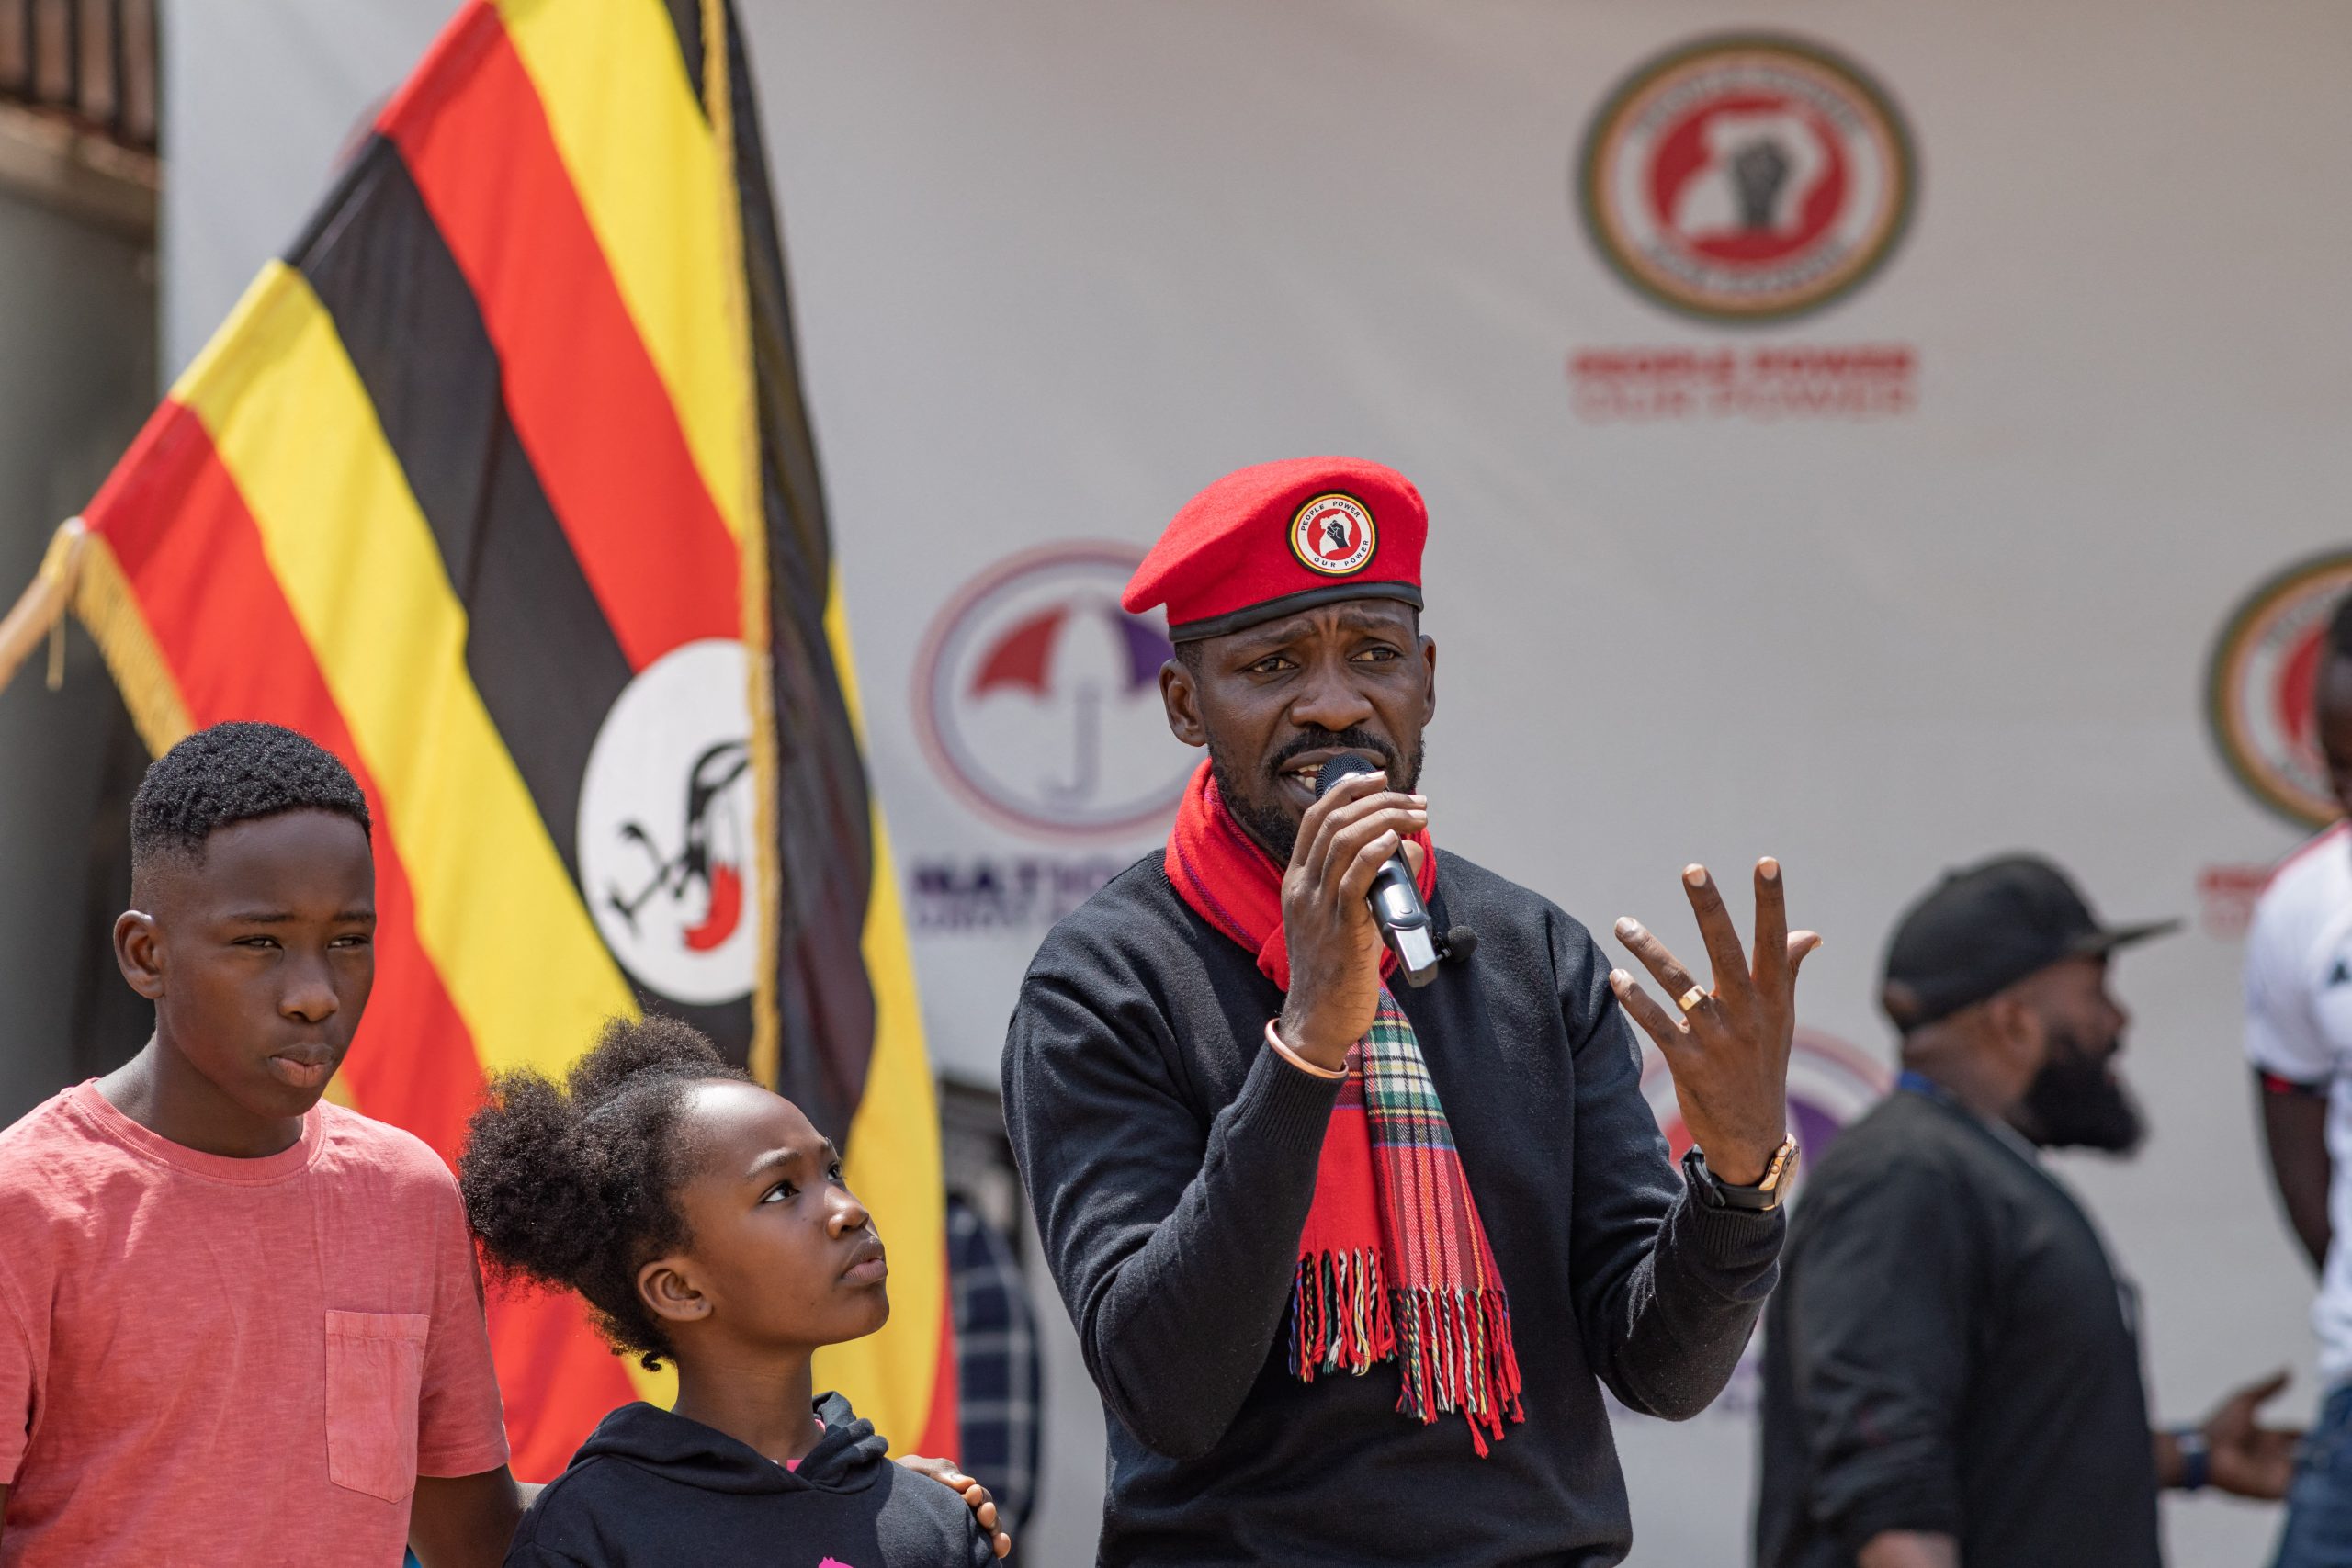 Ofisi za chama cha Bobi Wine zazingirwa na polisi kufuatia mpango wa maandamano Uganda